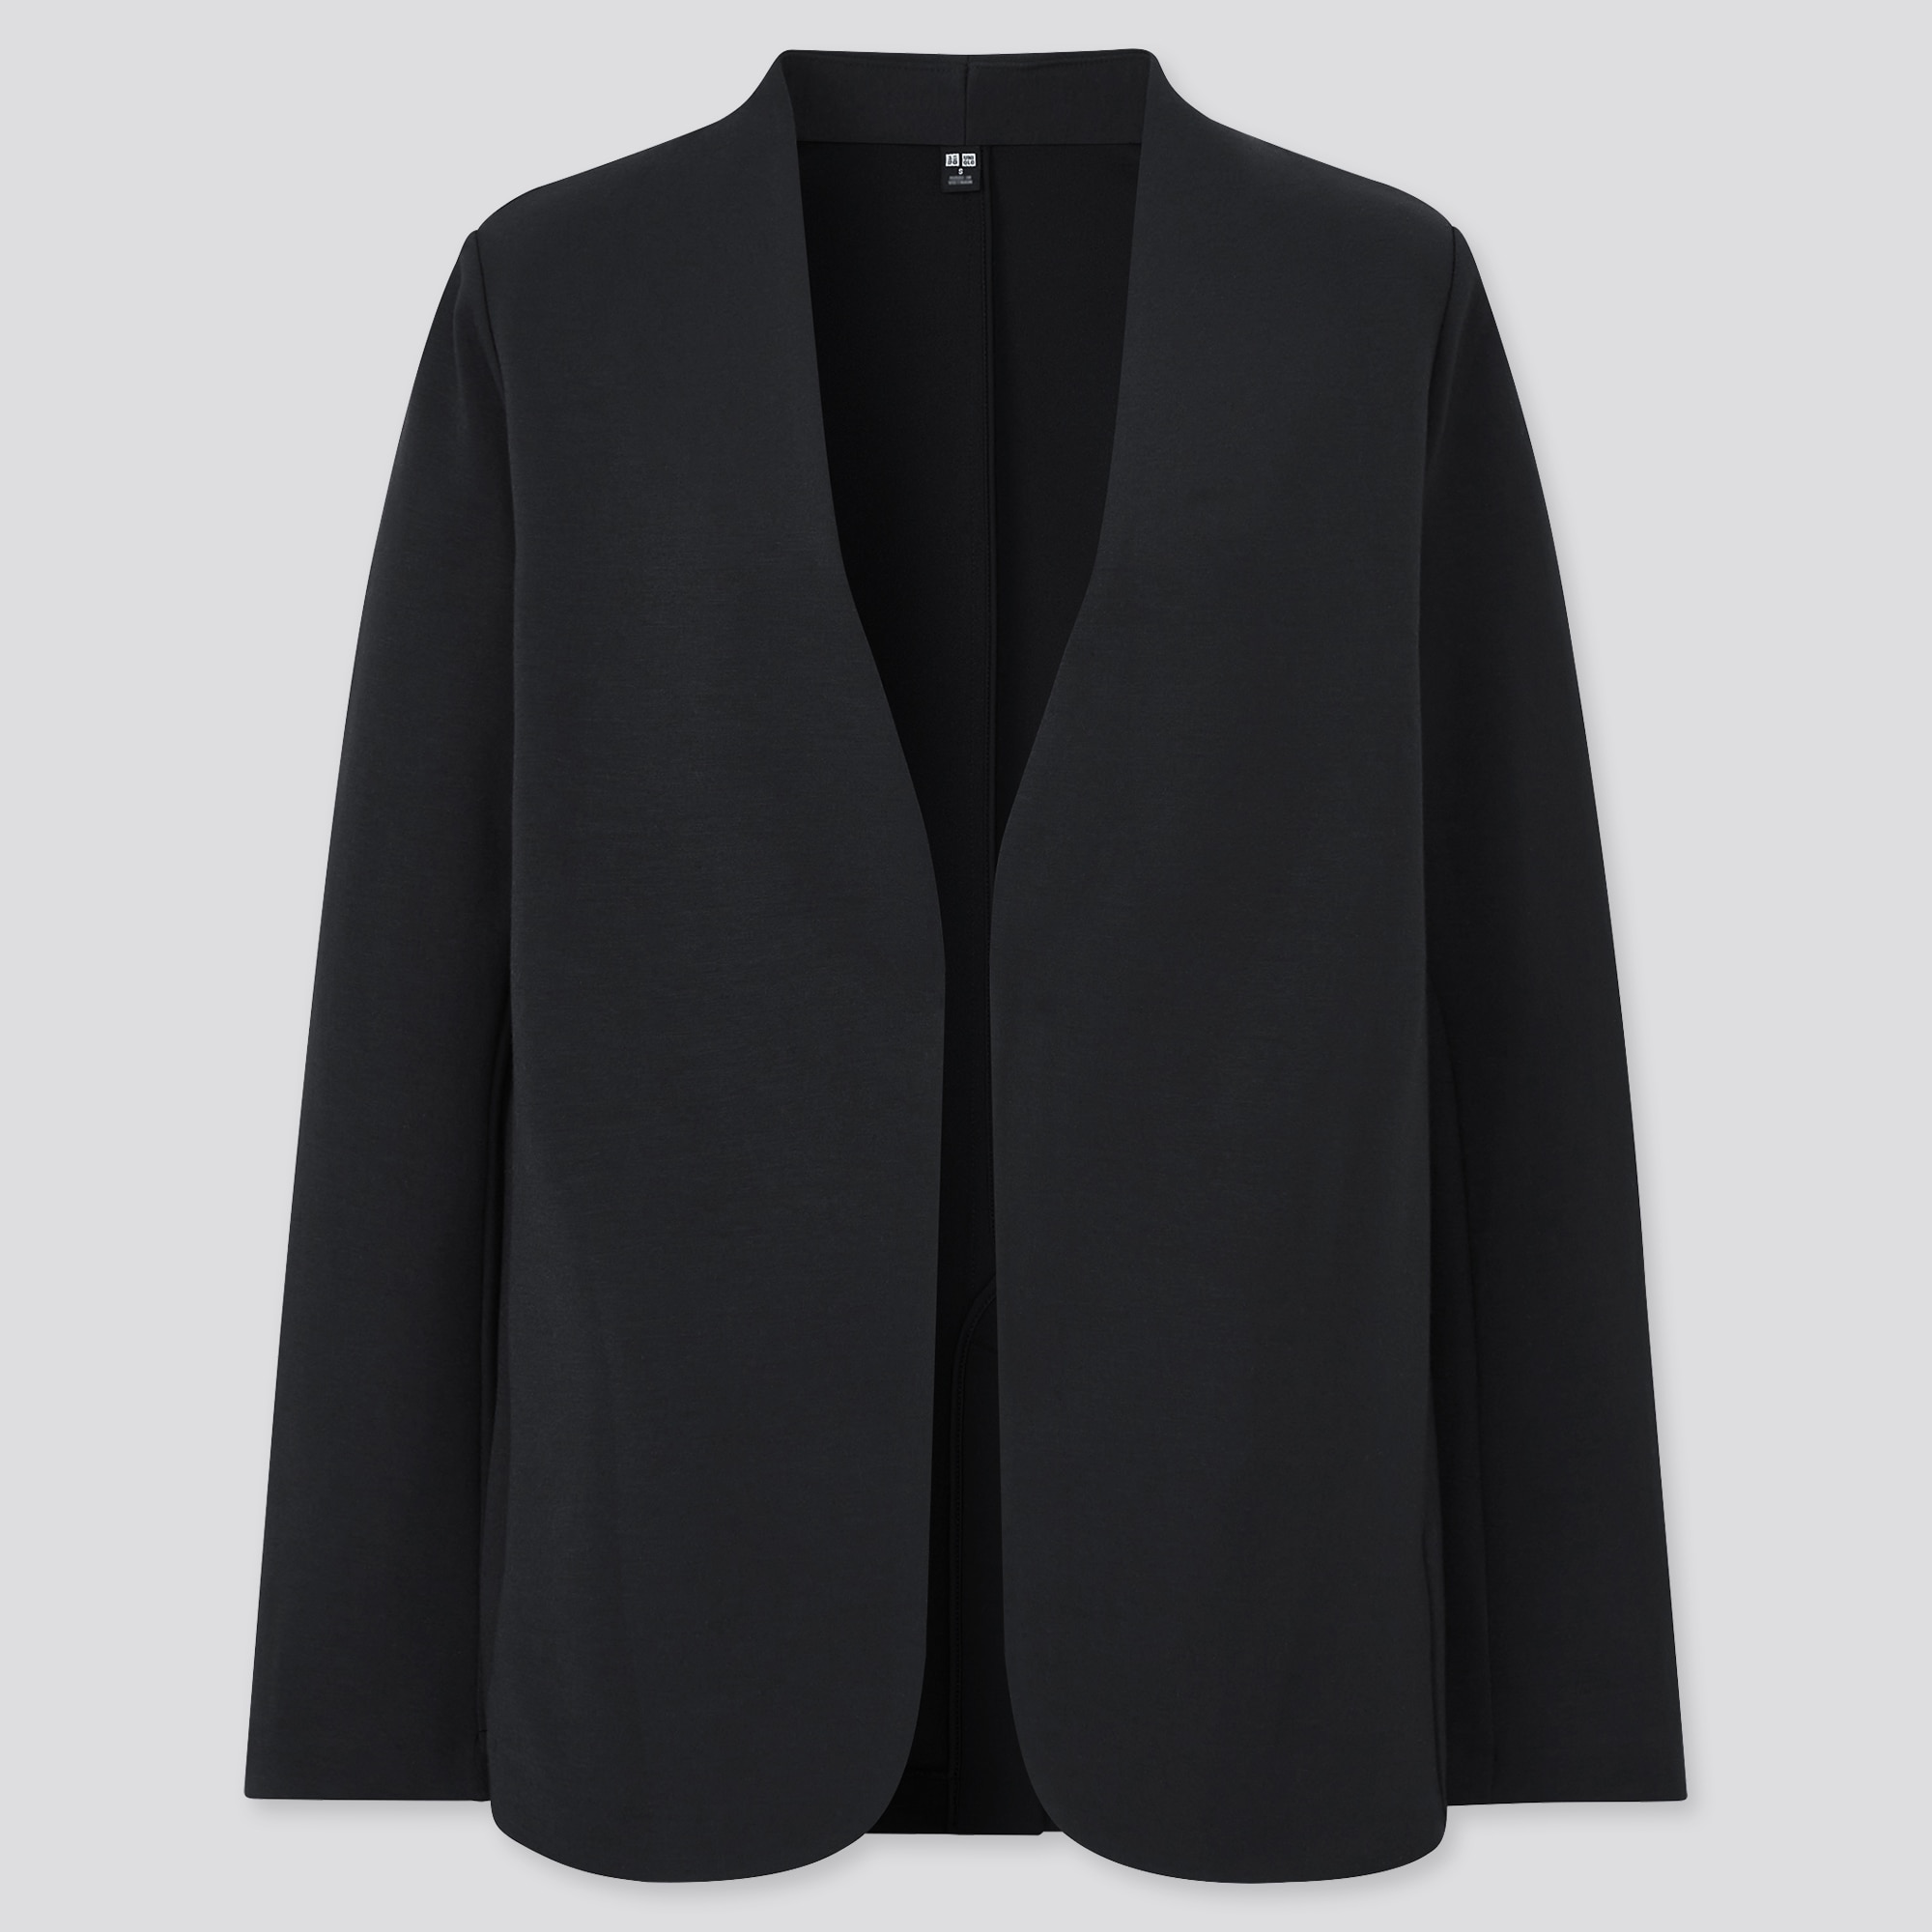 Uniqloのストレッチダブルフェイスジャケット 長袖 セットアップ可能 Stylehint